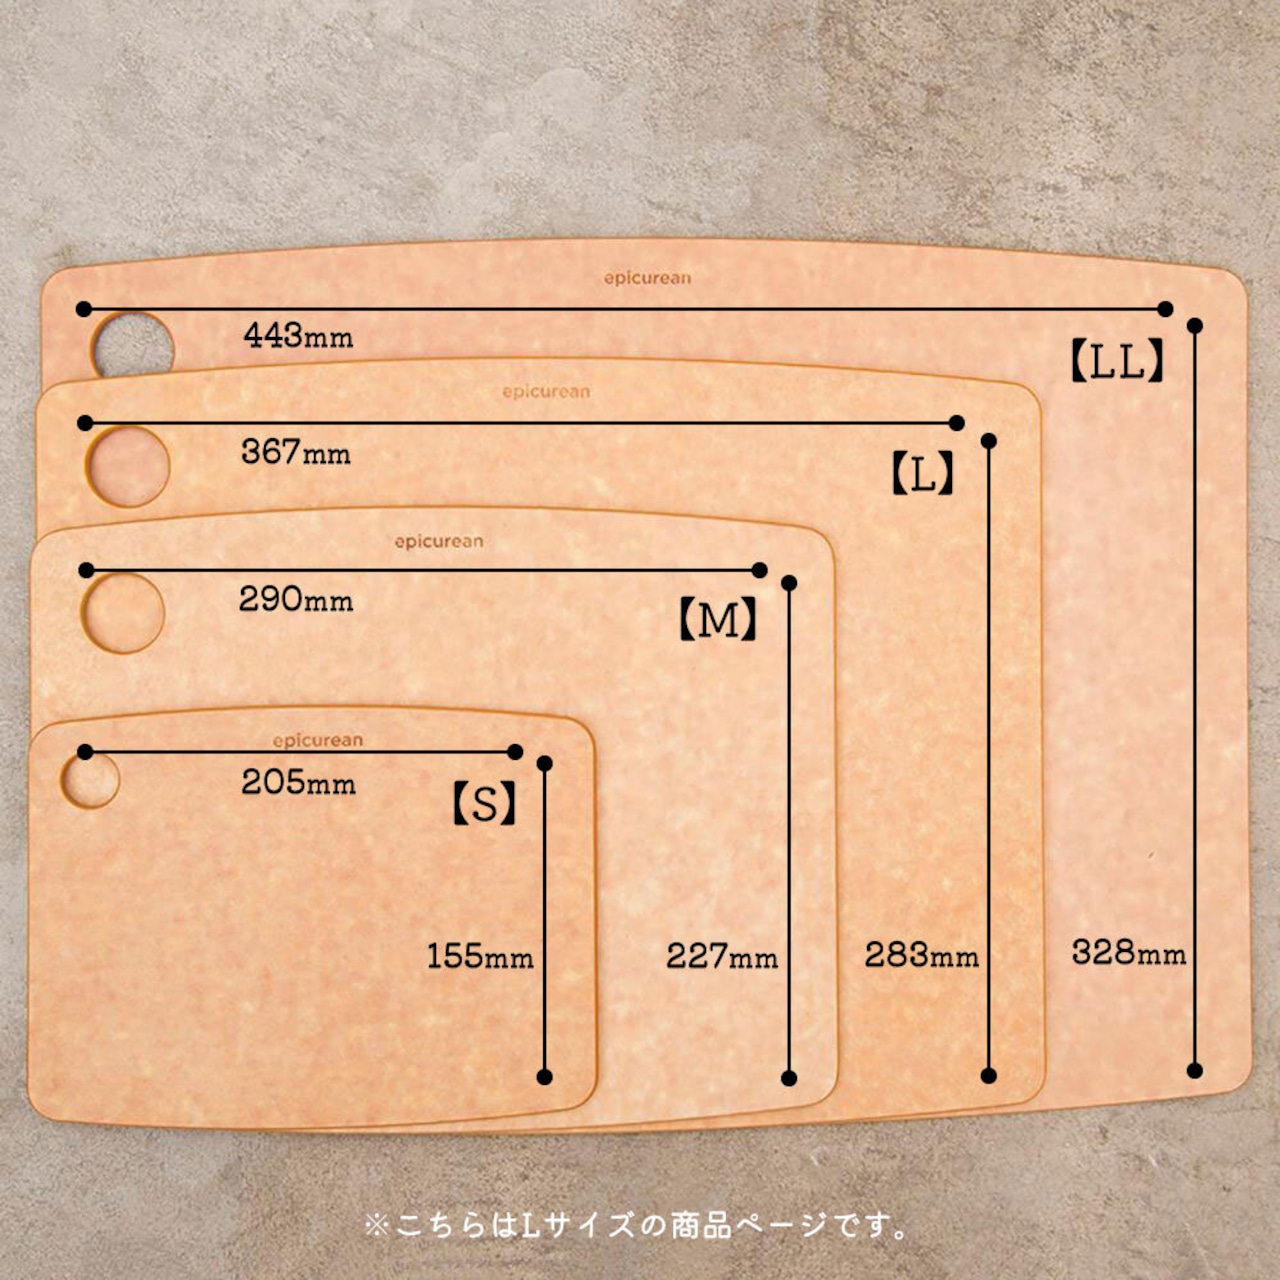 エピキュリアン カッティングボード 木製 まな板 おしゃれ 食洗機対応 epicurean Lサイズ ブラック